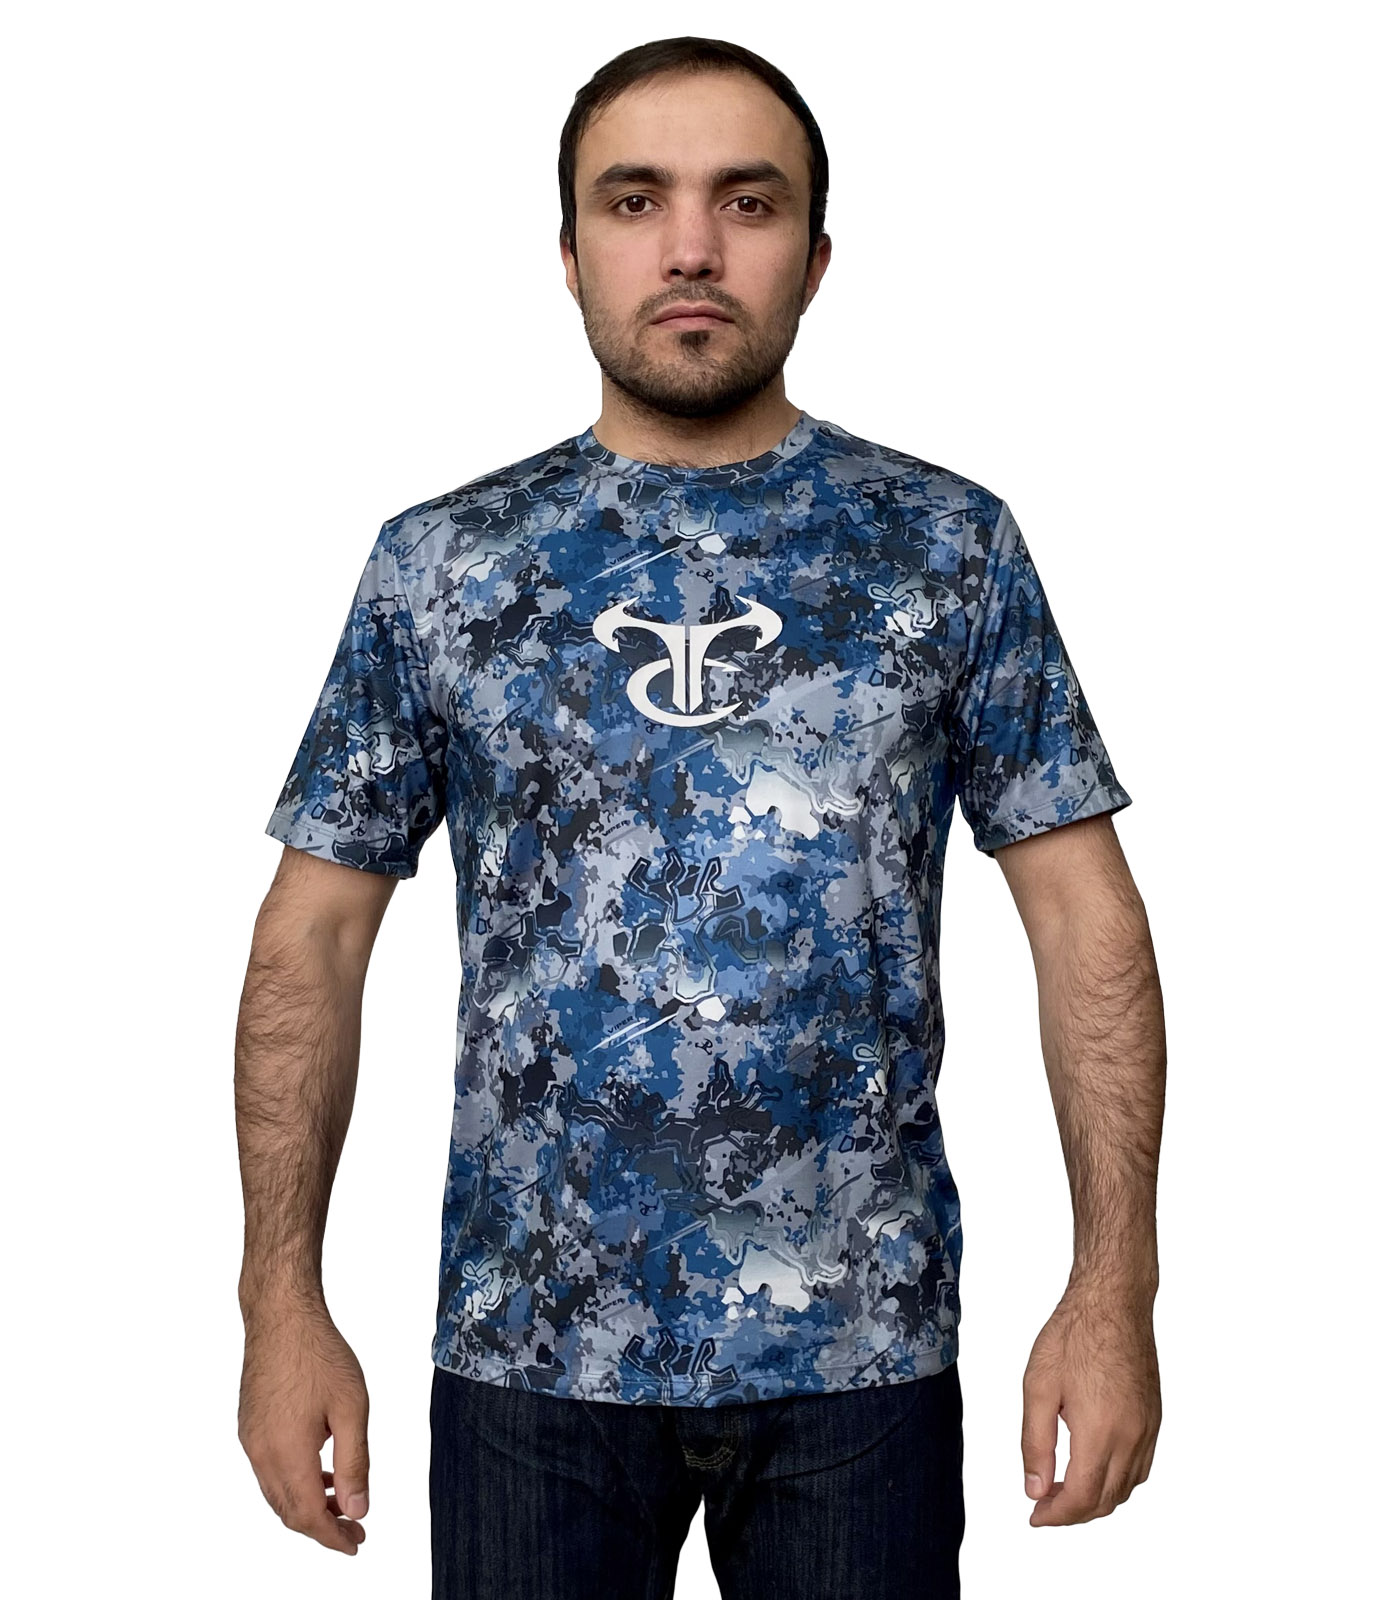 Мужская футболка TrueTimber с камуфляжным принтом